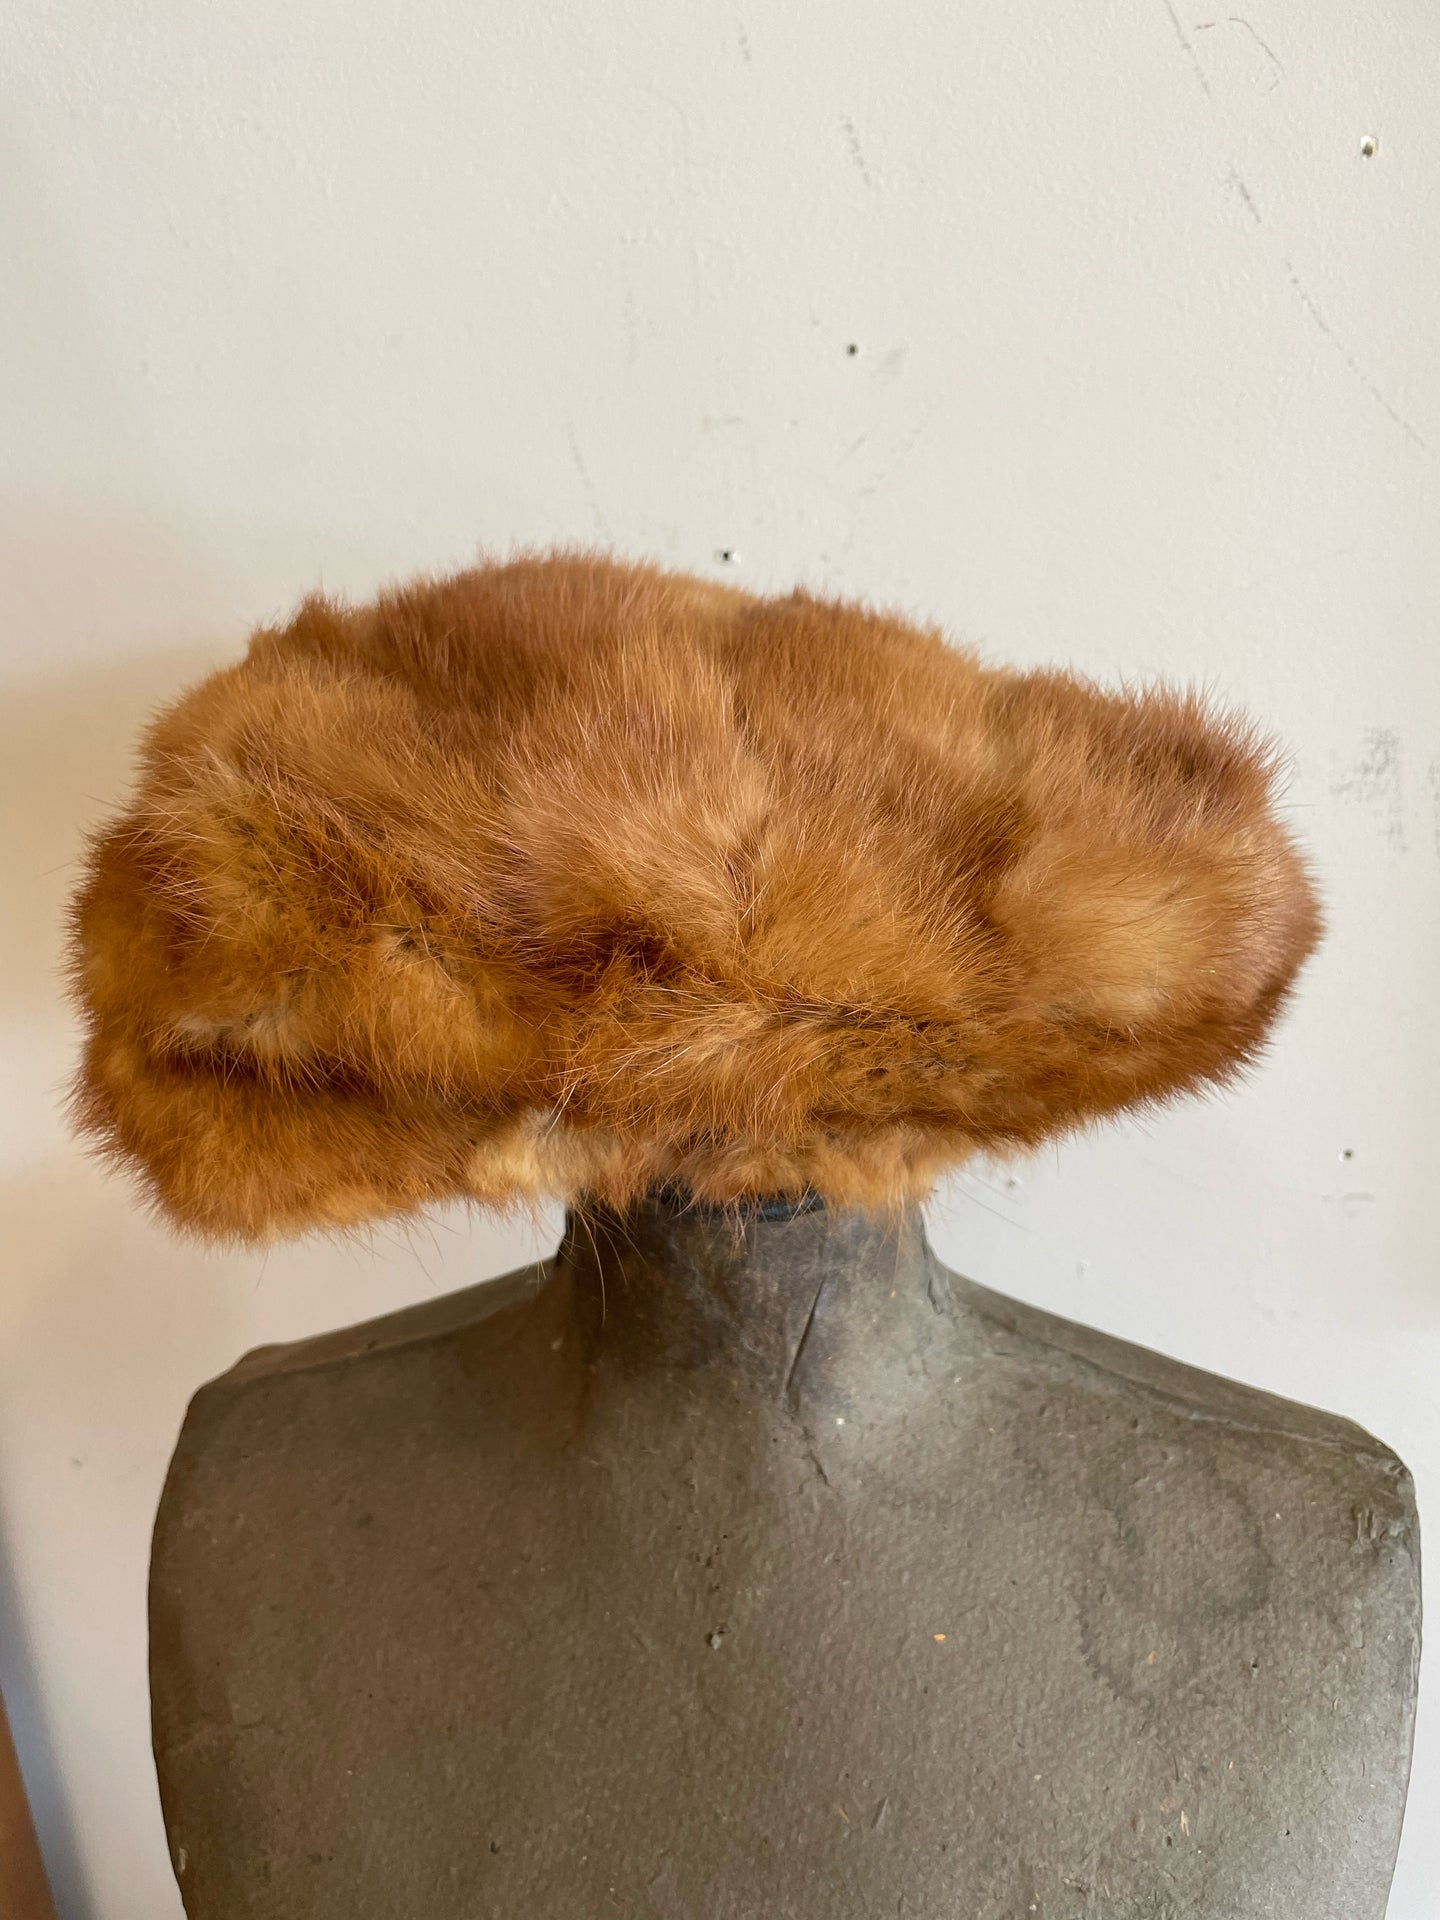 Brown Fur Hat